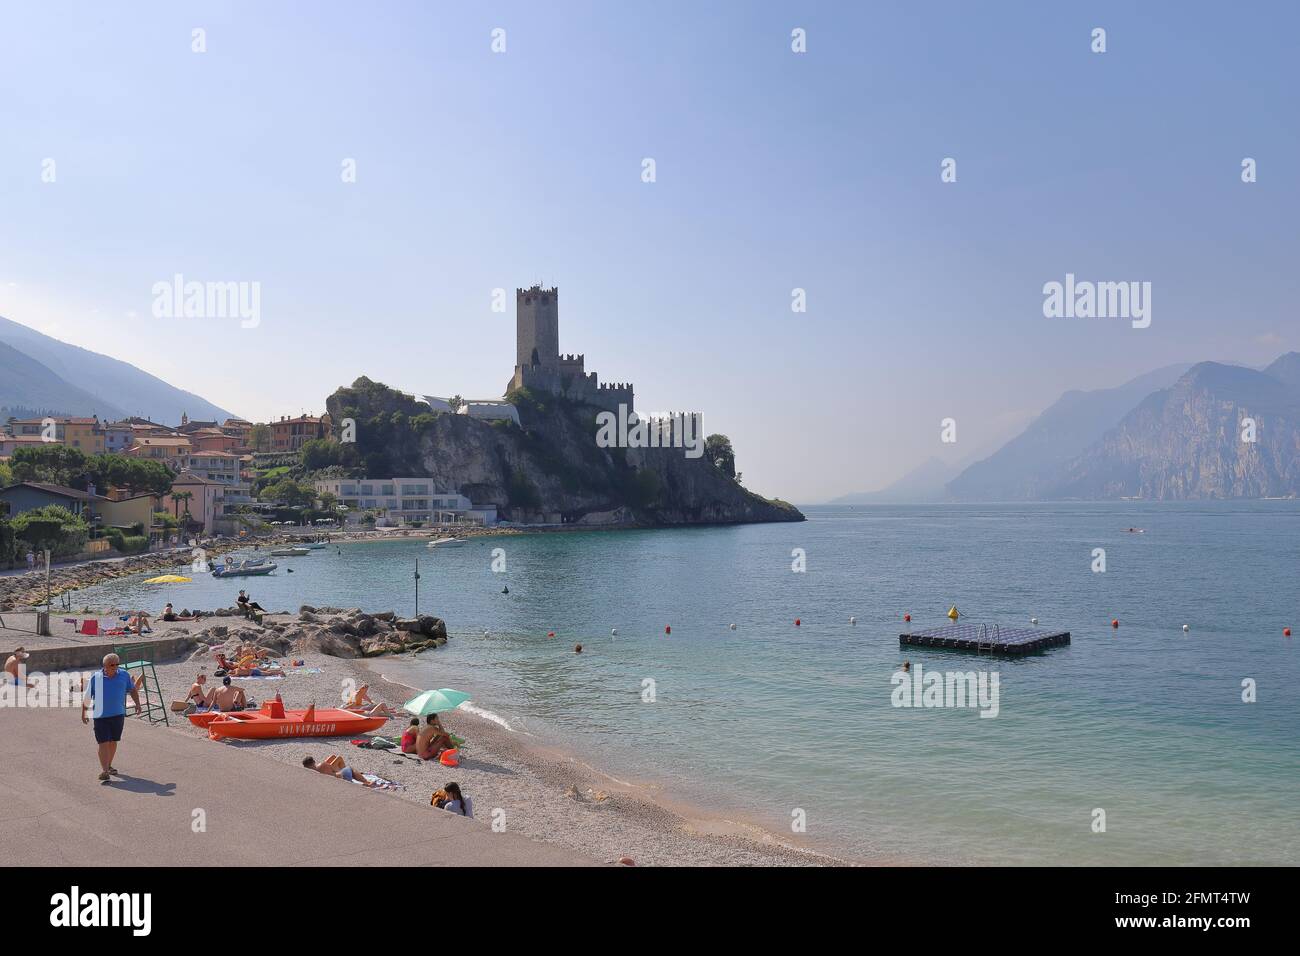 ITALIE, VÉNÉTIE, VÉRONE, MALCESINE - 16 SEPTEMBRE 2019 : Castello Scaligero à Malcesine sur les rives du lac de Garde Banque D'Images